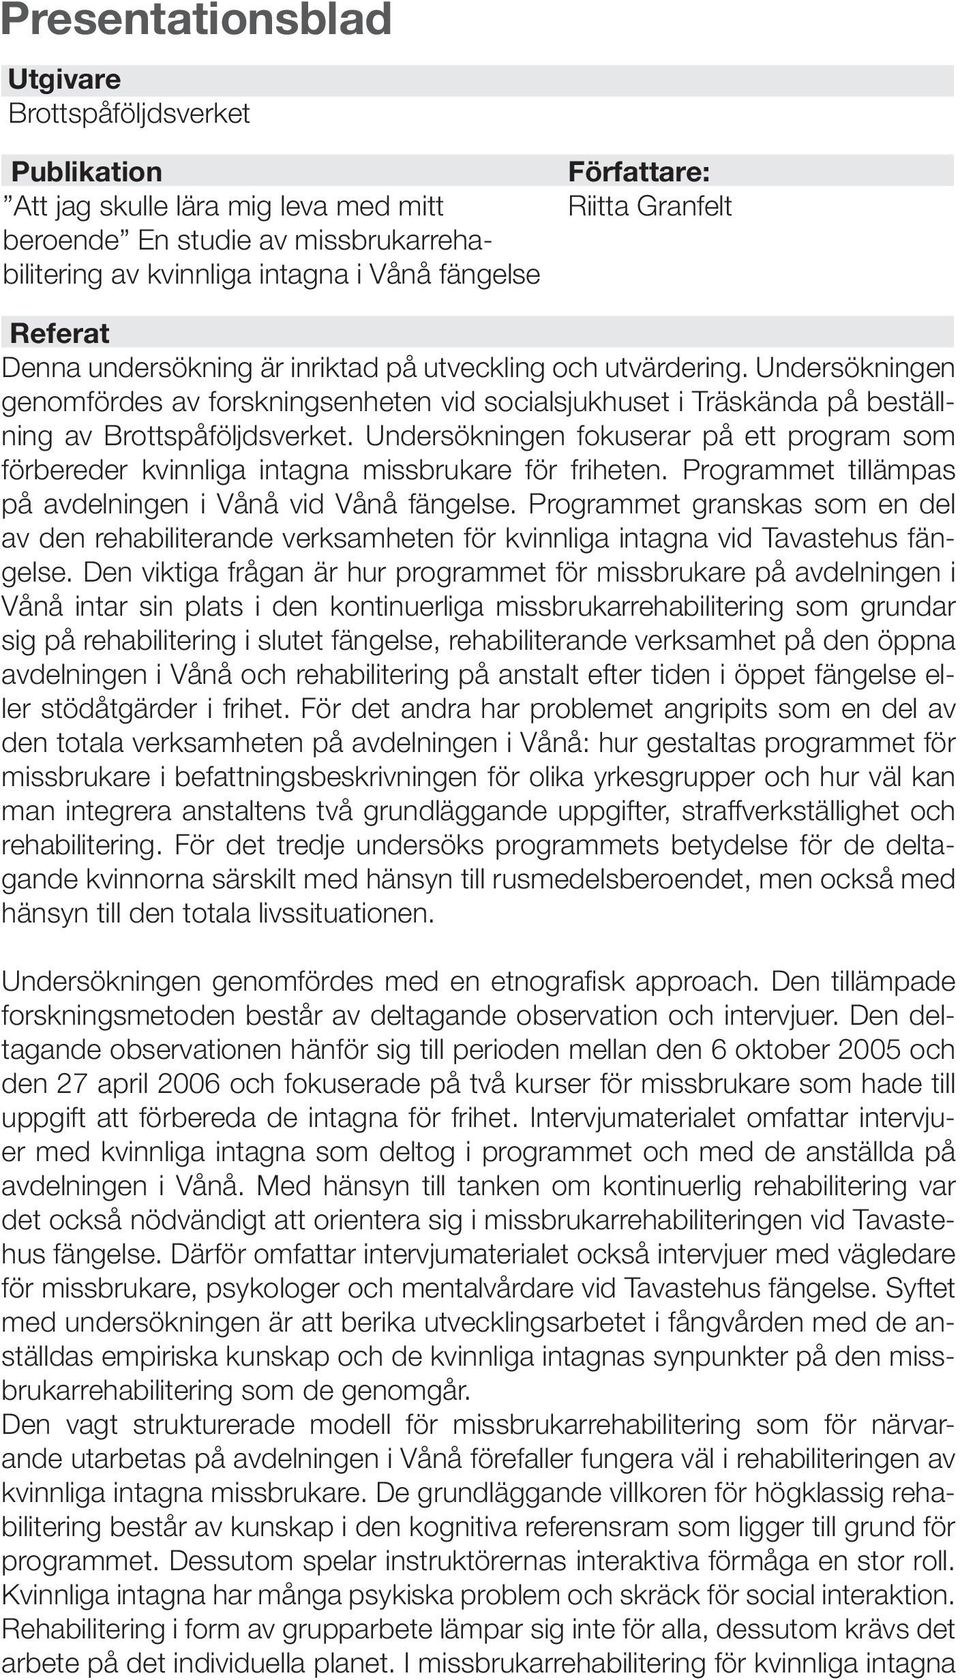 Undersökningen genomfördes av forskningsenheten vid socialsjukhuset i Träskända på beställning av Brottspåföljdsverket.